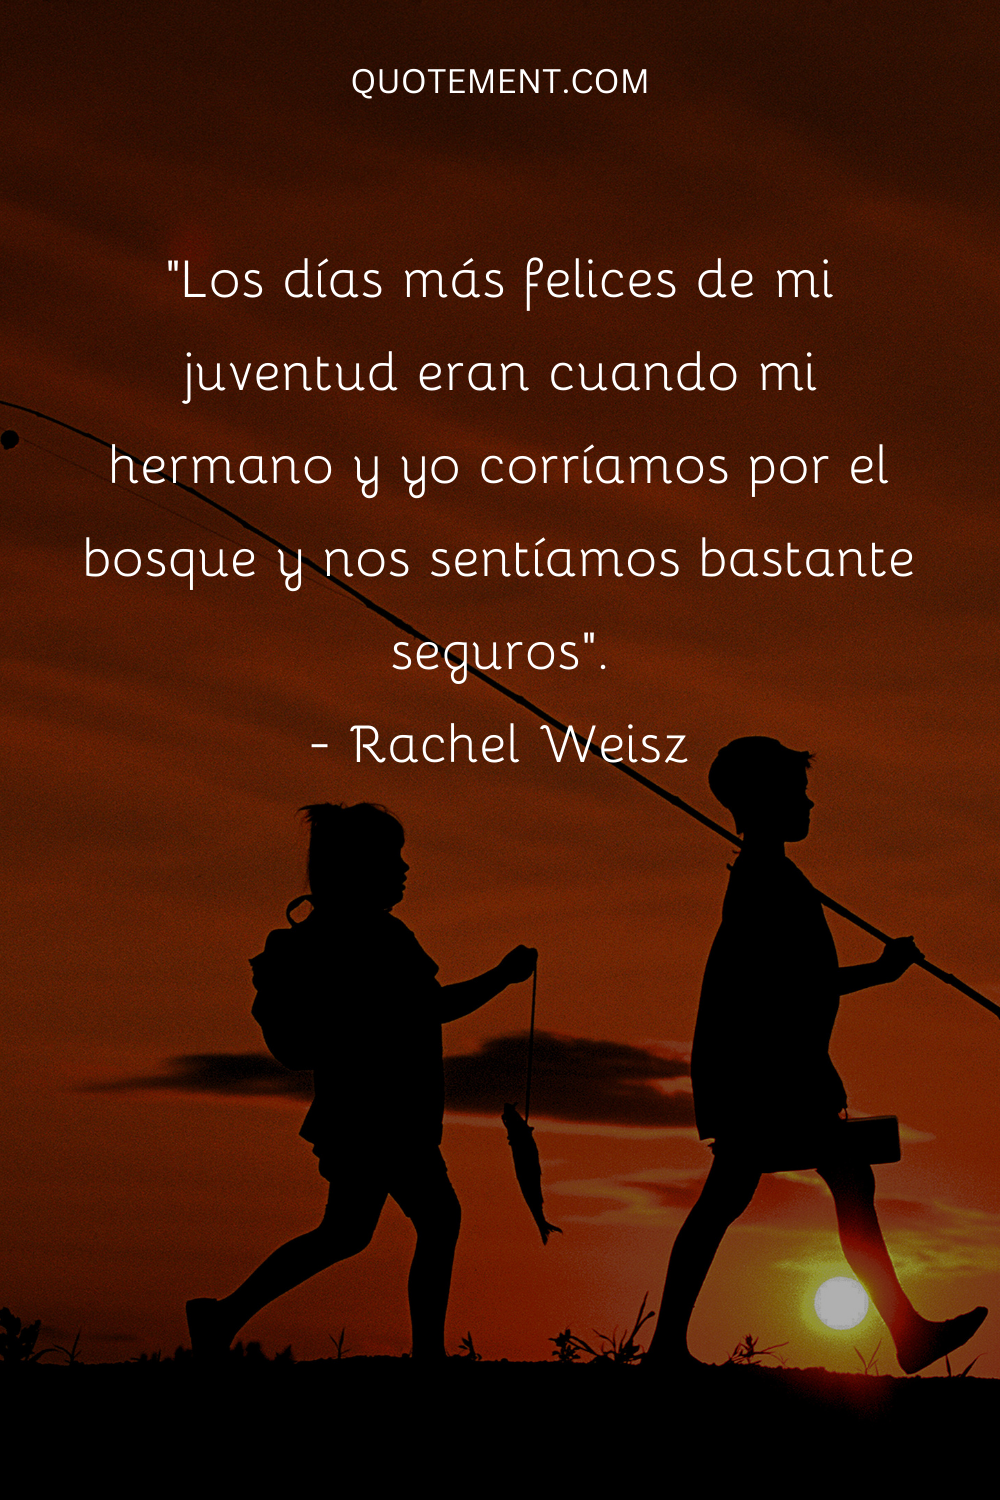 "Los días más felices de mi juventud eran cuando mi hermano y yo corríamos por el bosque y nos sentíamos muy seguros". - Rachel Weisz